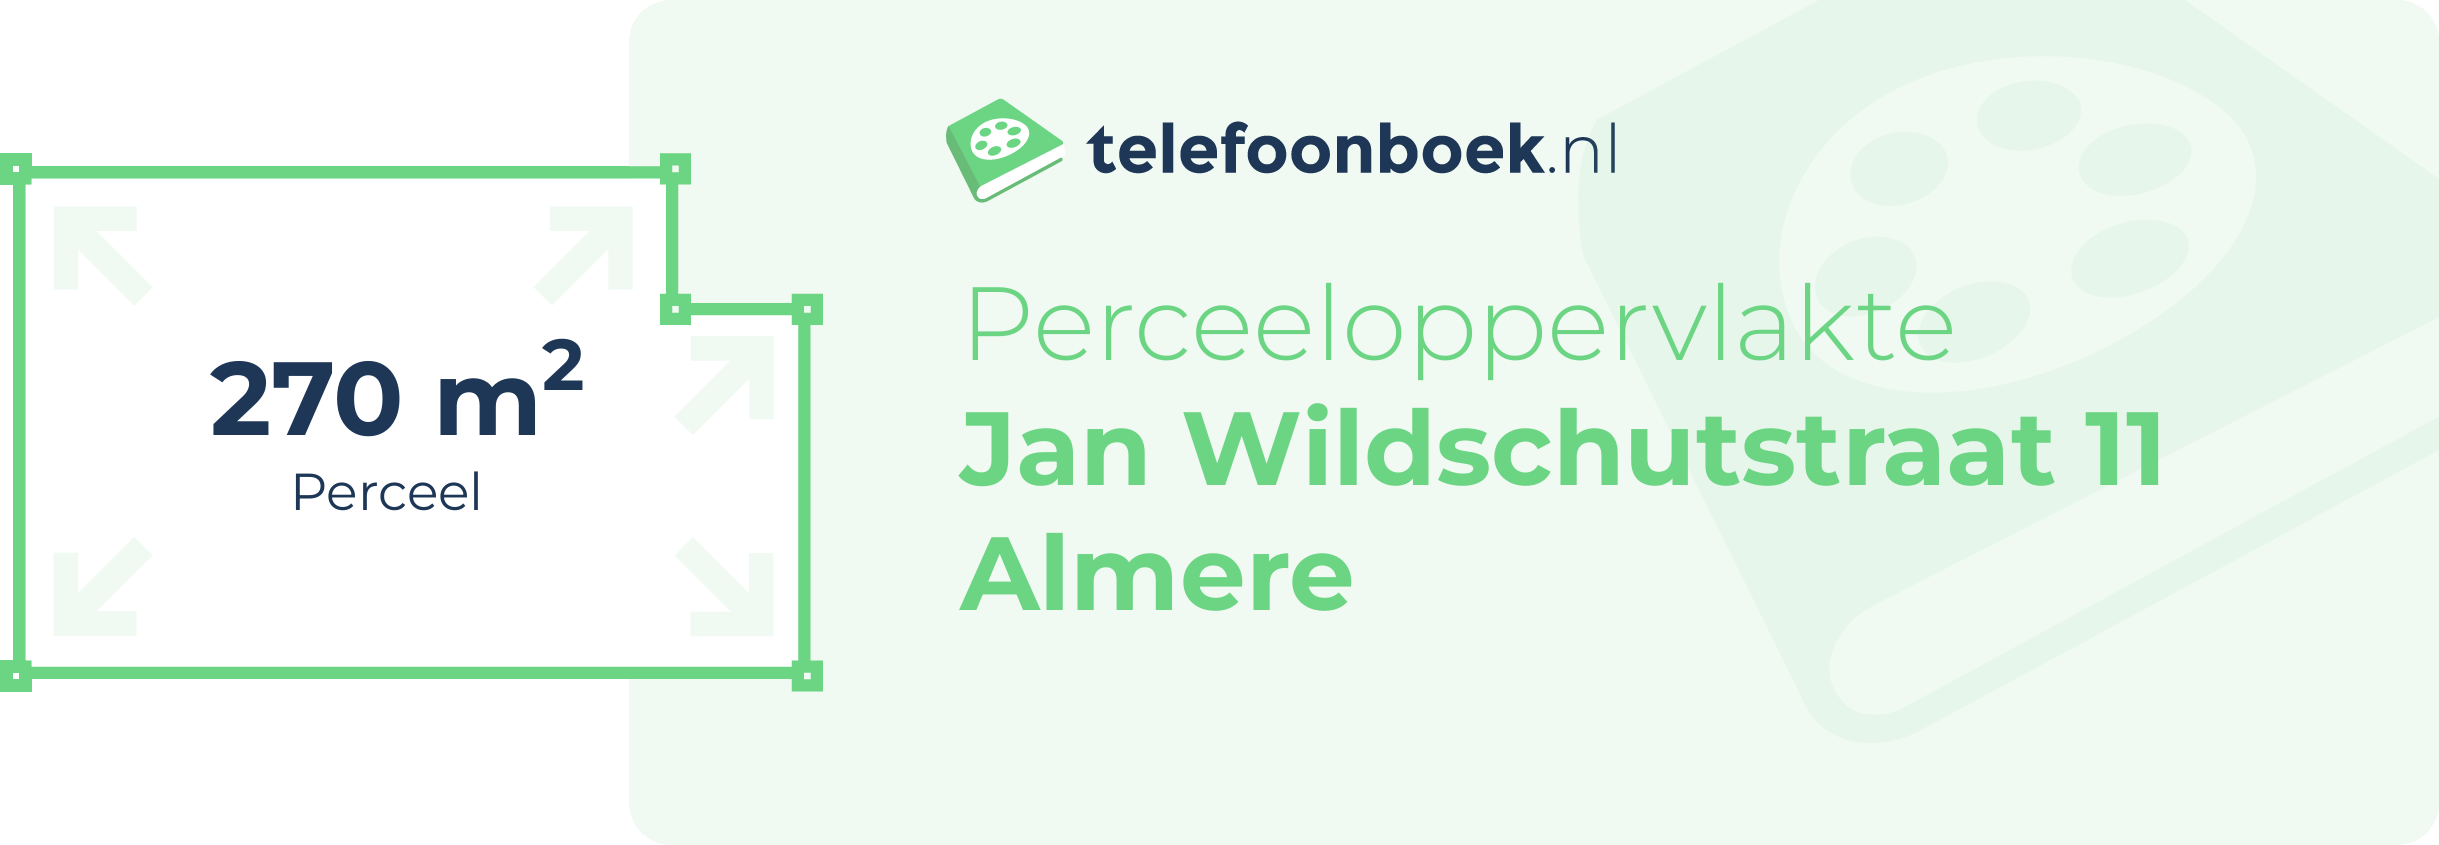 Perceeloppervlakte Jan Wildschutstraat 11 Almere